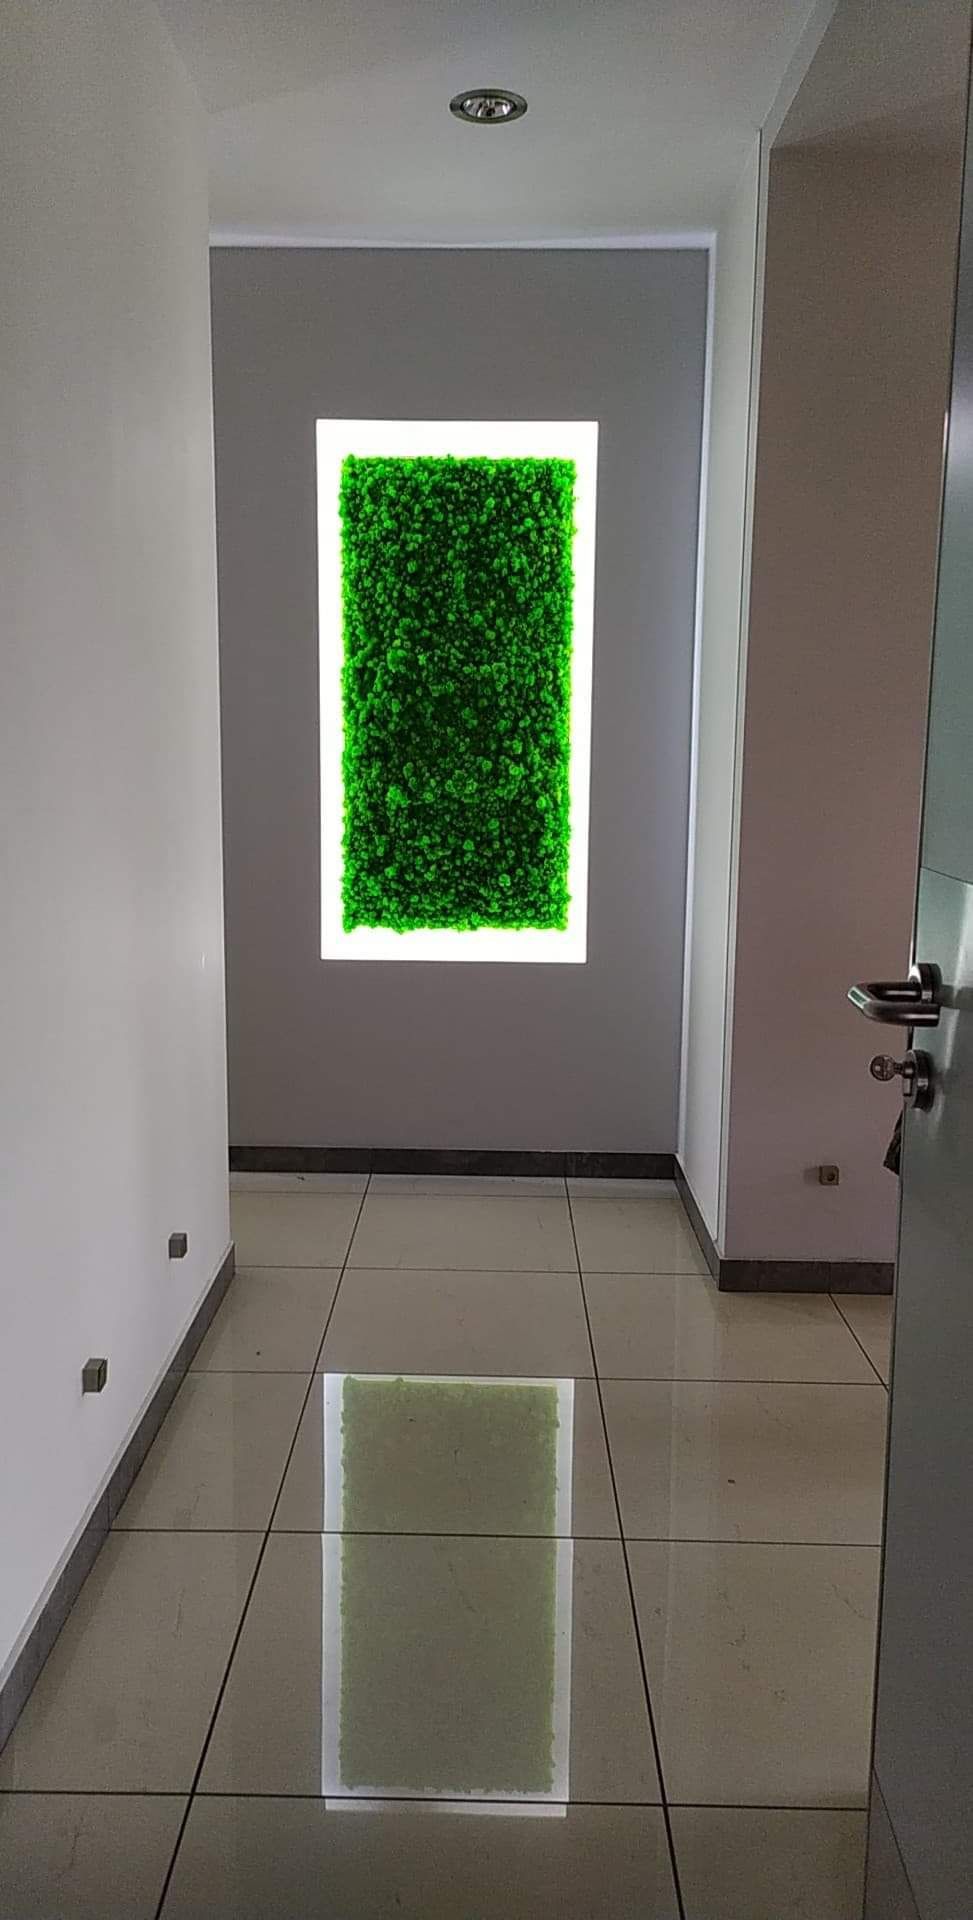 Obraz z mchu mech chrobotek reniferowy zielony obraz dekoracja